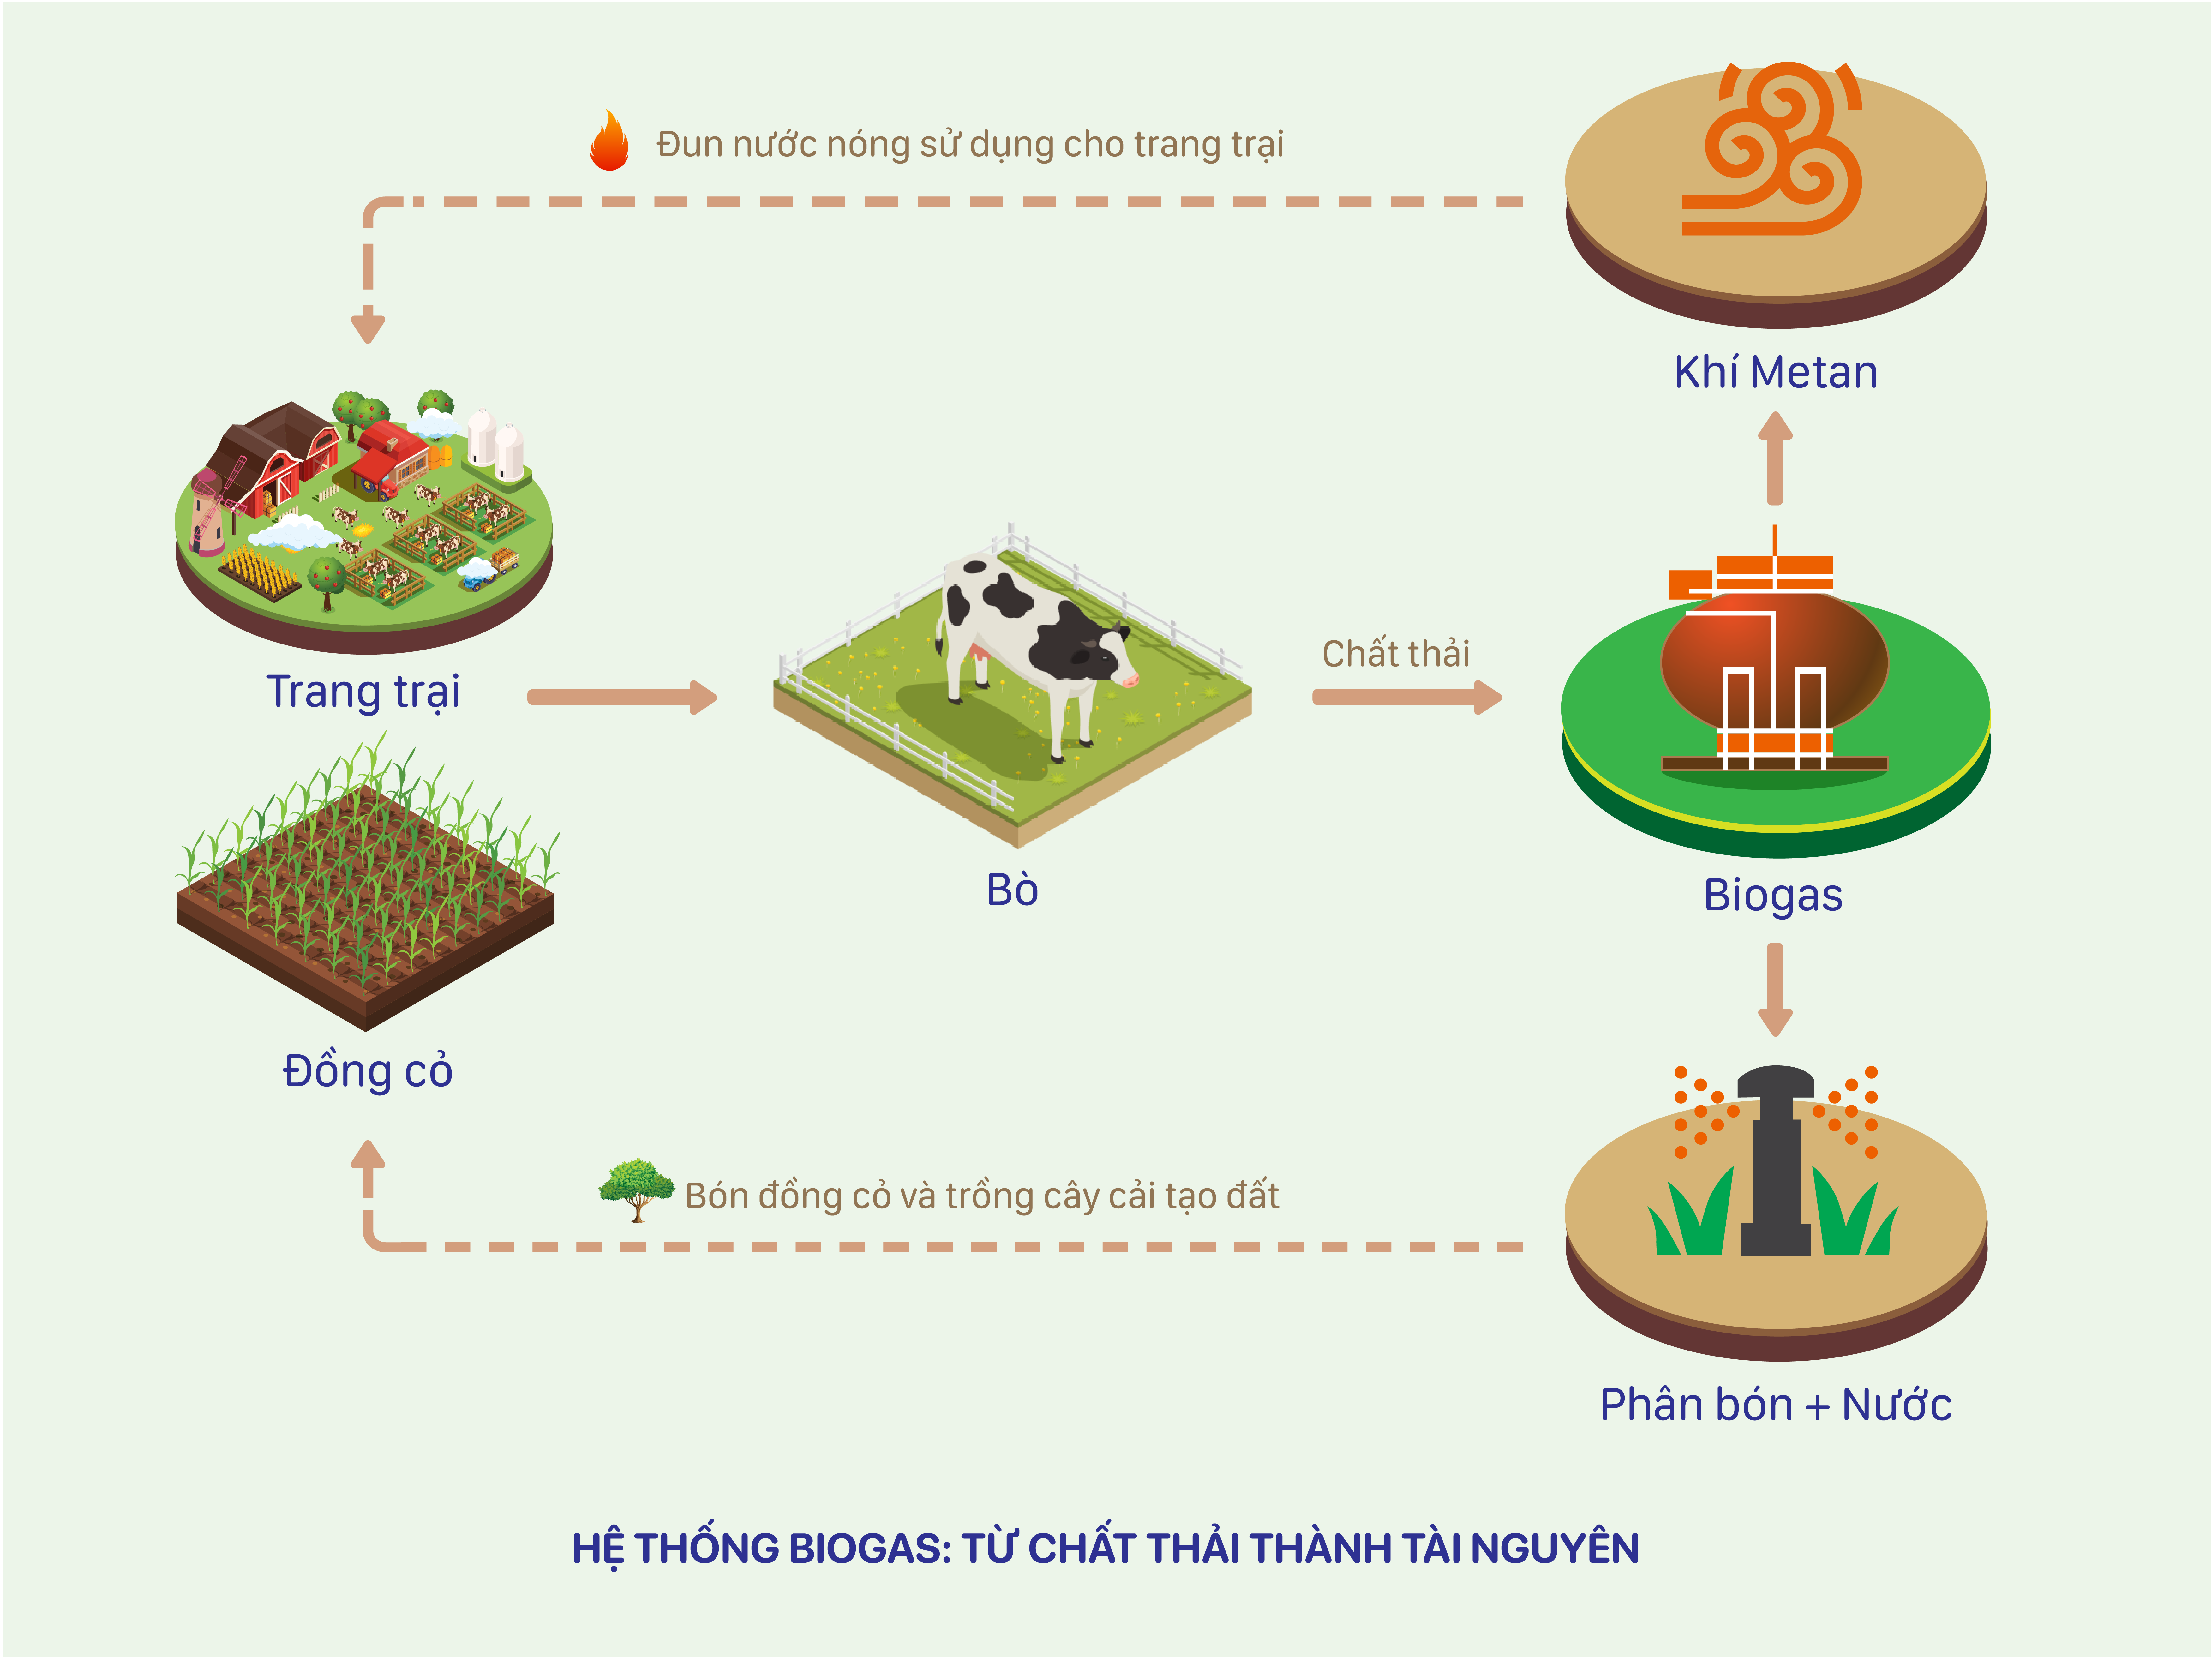 Sơ đồ về hệ thống Biogas tại các trang trại bò sữa Vinamilk